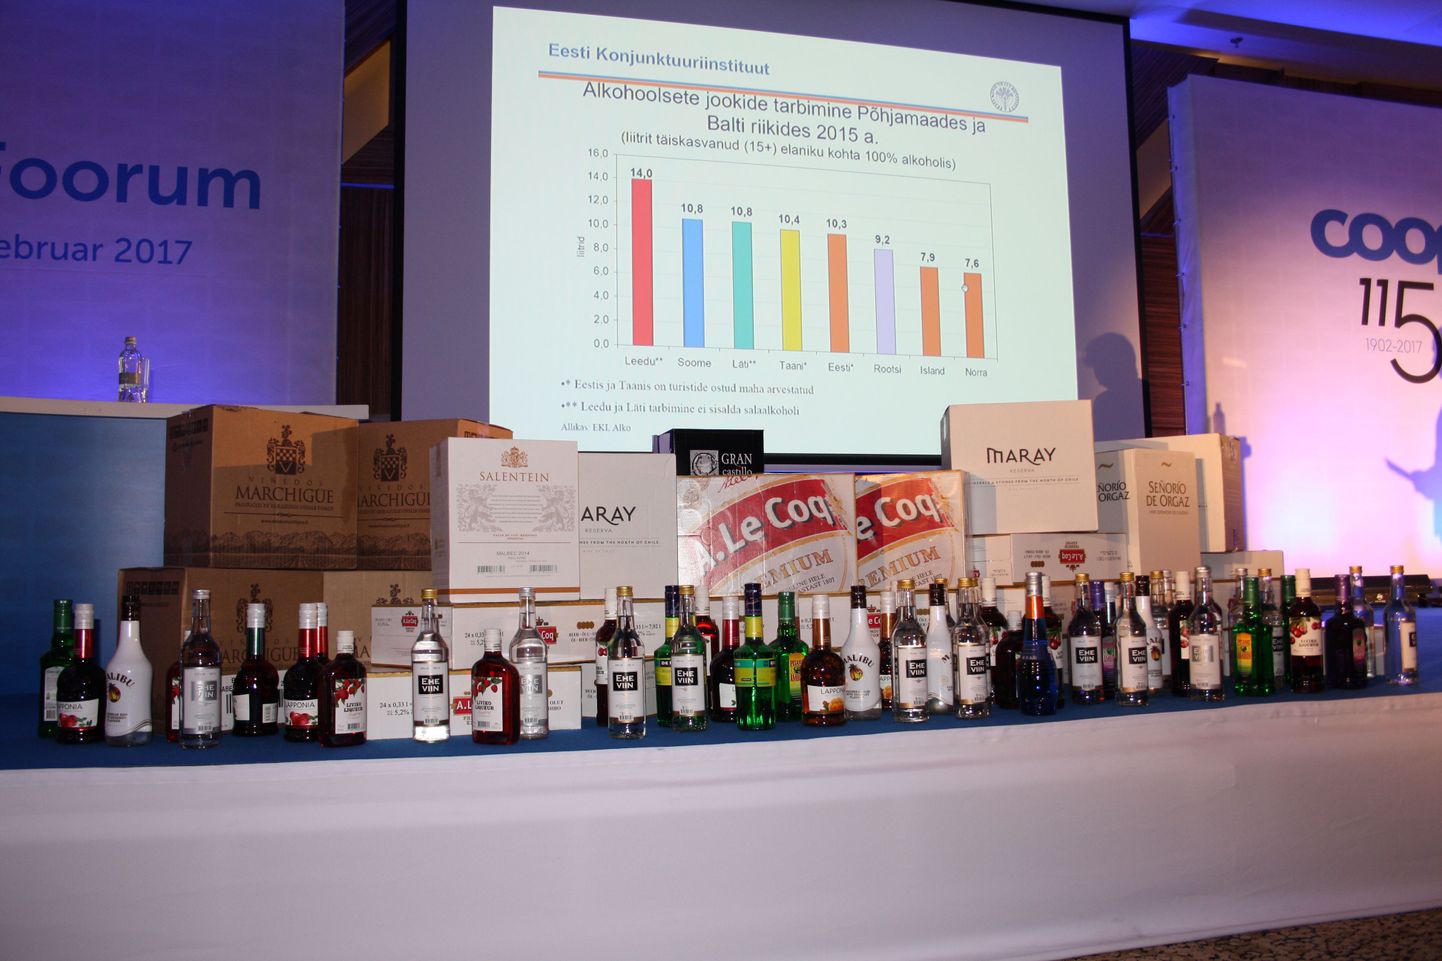 Coop Eesti aastakonverentsi laval ilutses täpselt selline kogus alkoholi, mida võib iga piiriületaja ühe päeva jooksul Lätist Eesti vedada.